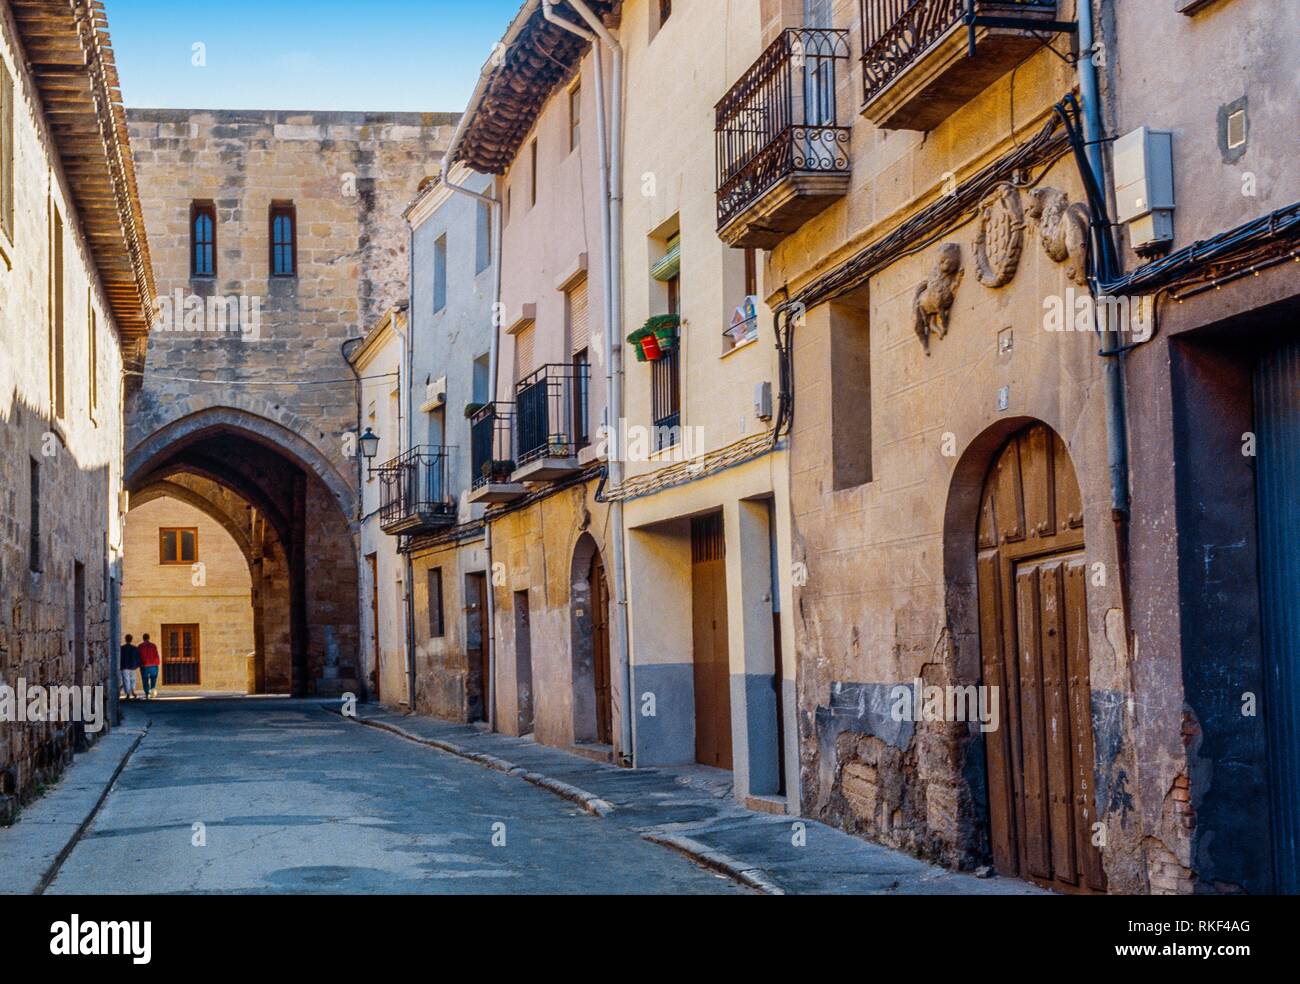 Santo Domingo de la Calzada. La Rioja. Spain Stock Photo - Alamy